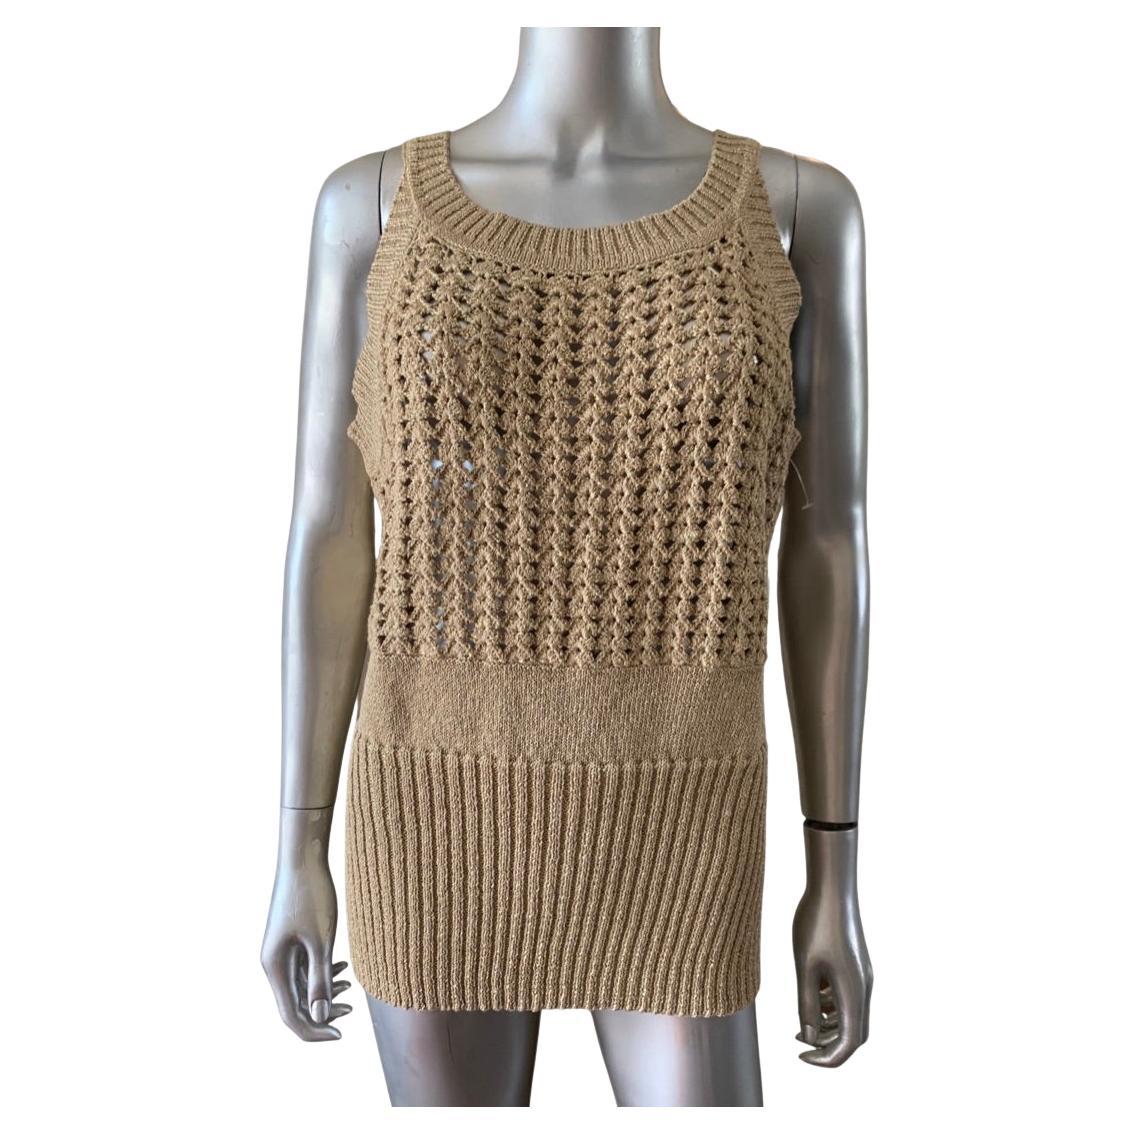 Louis Vuitton Open Side Striped Crochet Knit Crop Top